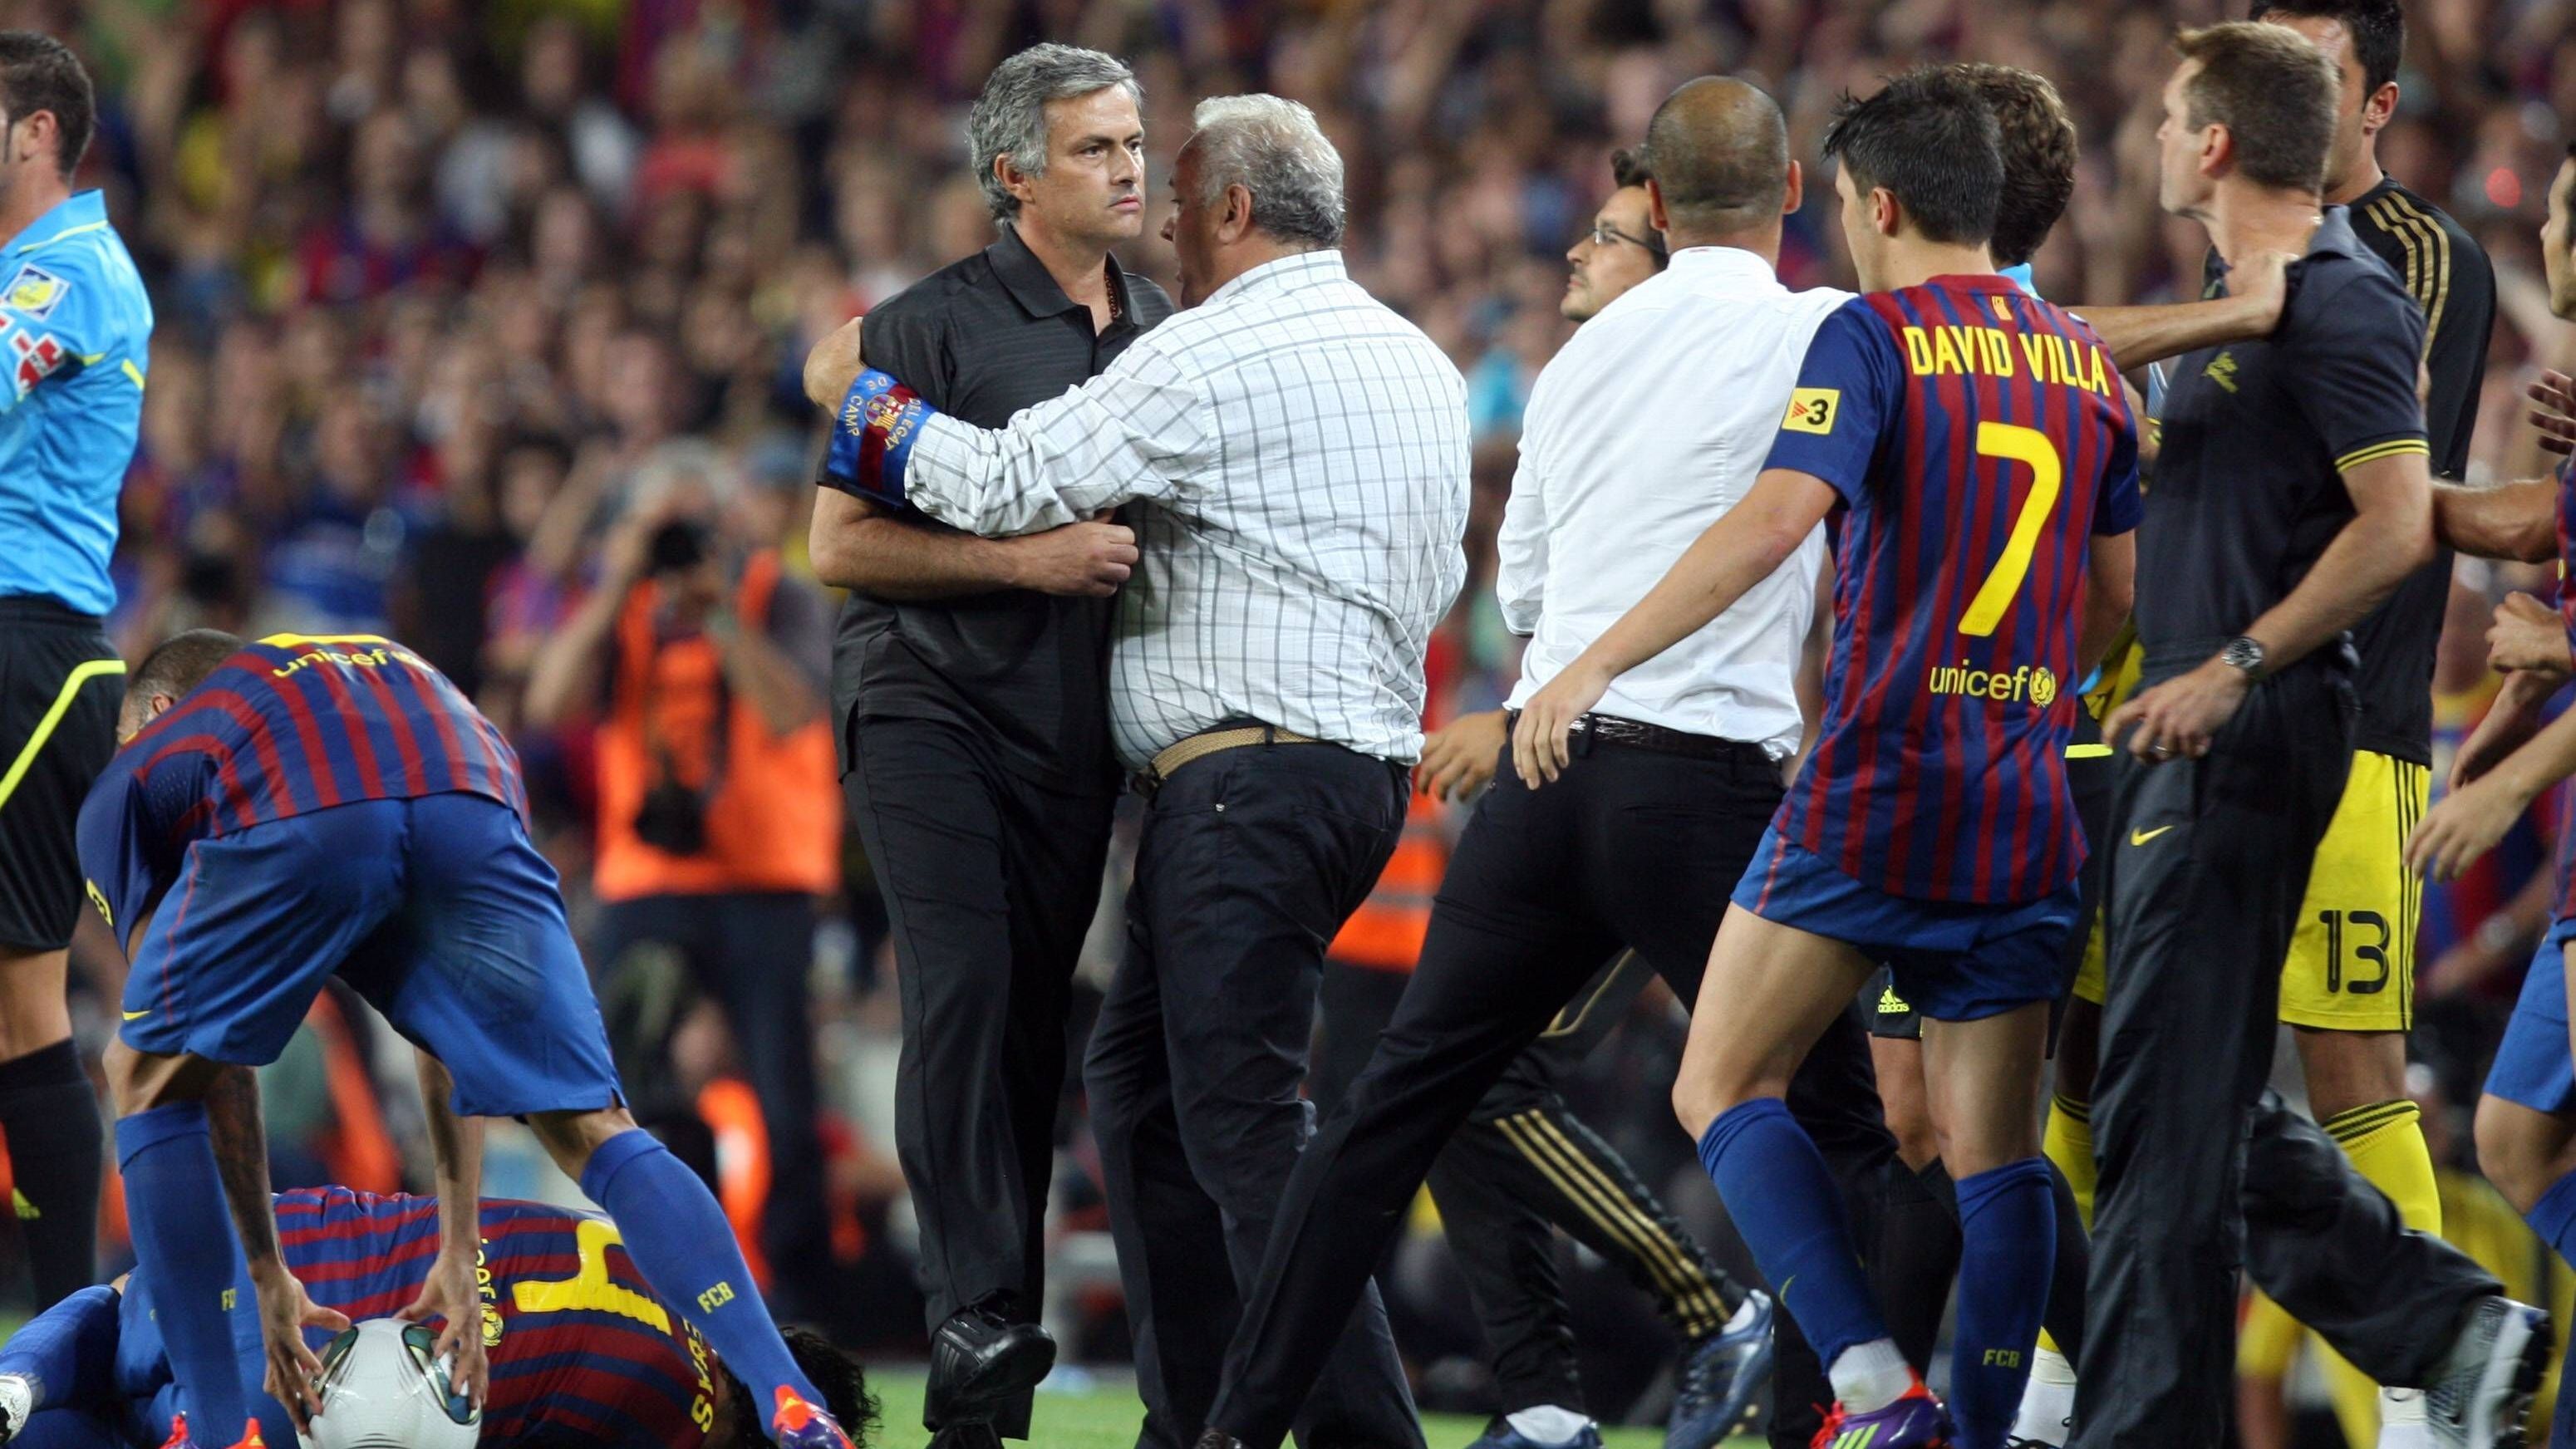 <strong>Jose Mourinho und Tito Vilanova</strong><br>Wieder Mourinho. Als Real-Trainer hatte der Portugiese den damaligen Barca-Assistenten Vilanova im Jahre 2011 bei der 2:3-Niederlage im Supercup-Rückspiel am Spielfeldrand attackiert und ihm seinen Finger ins Auge gebohrt. Später gab er zu: "Ich habe einen Fehler gemacht, da muss ich auch gar nicht nach Entschuldigungen suchen."